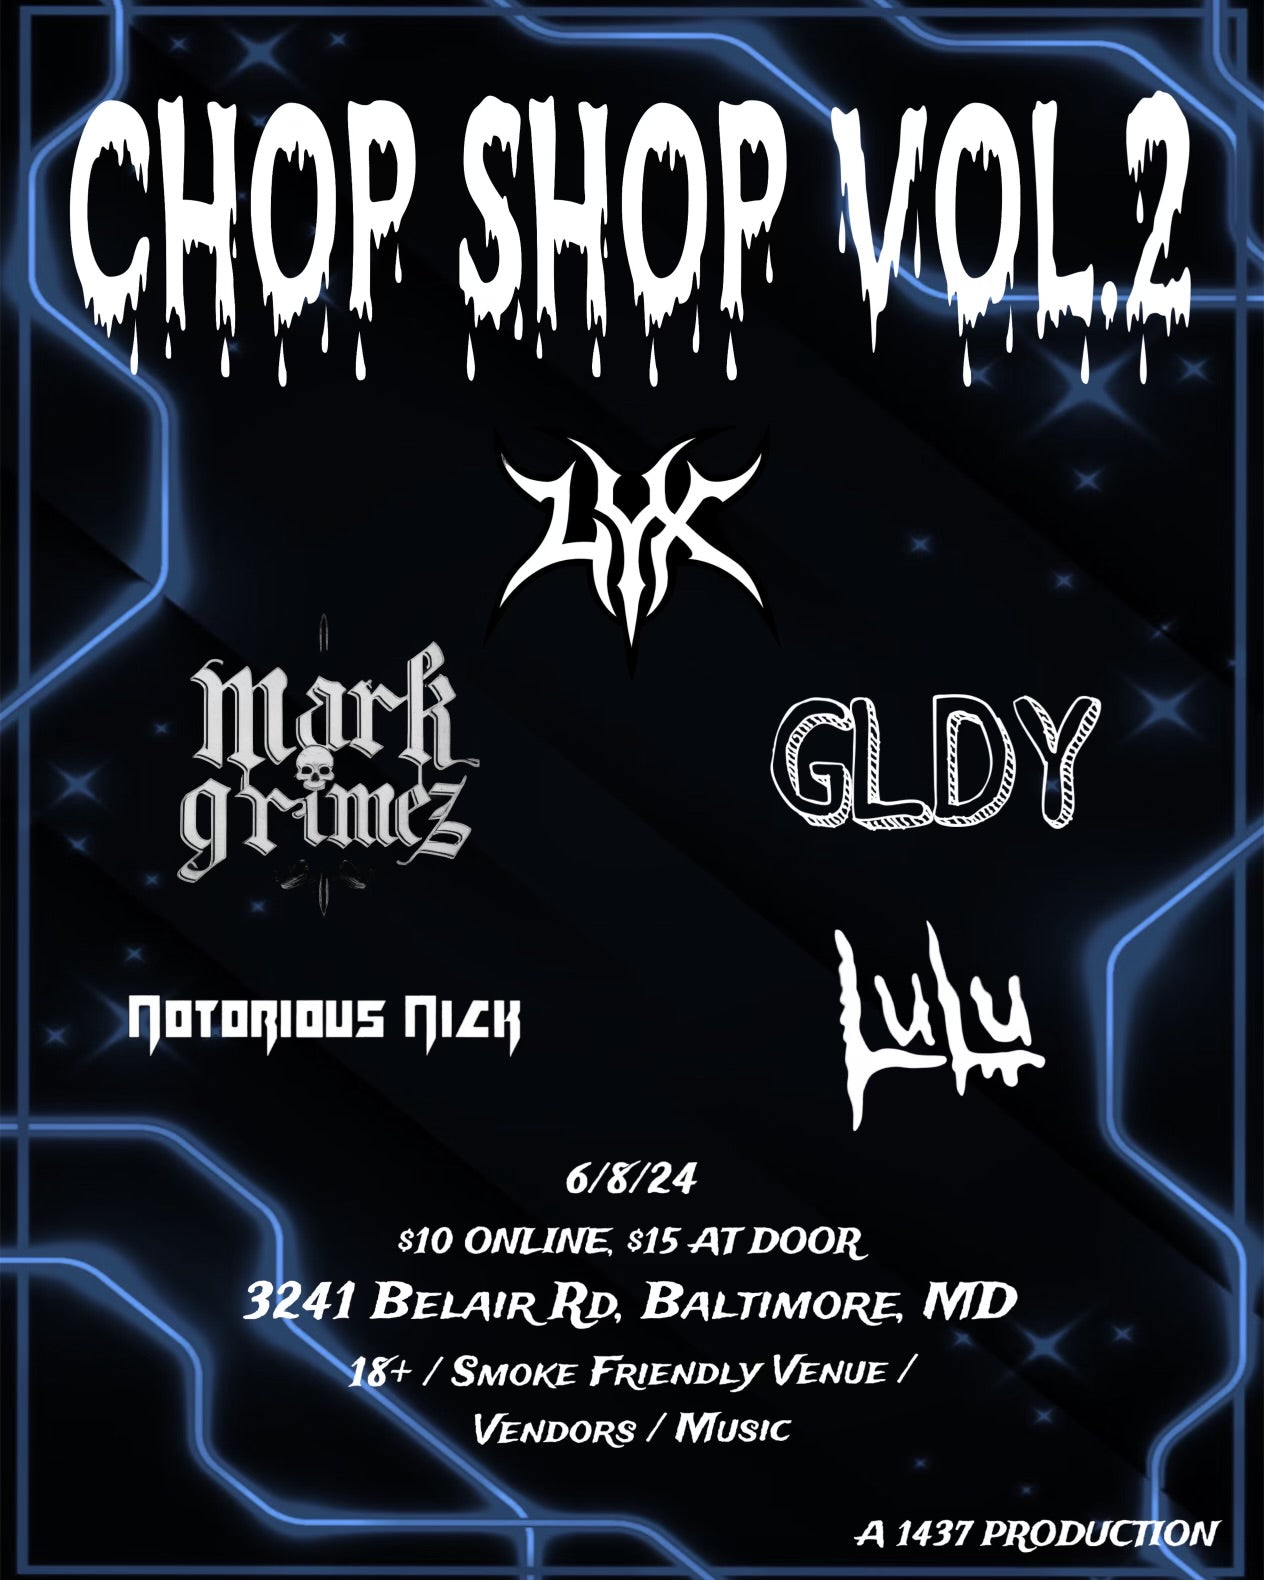 Chop Shop vol 2